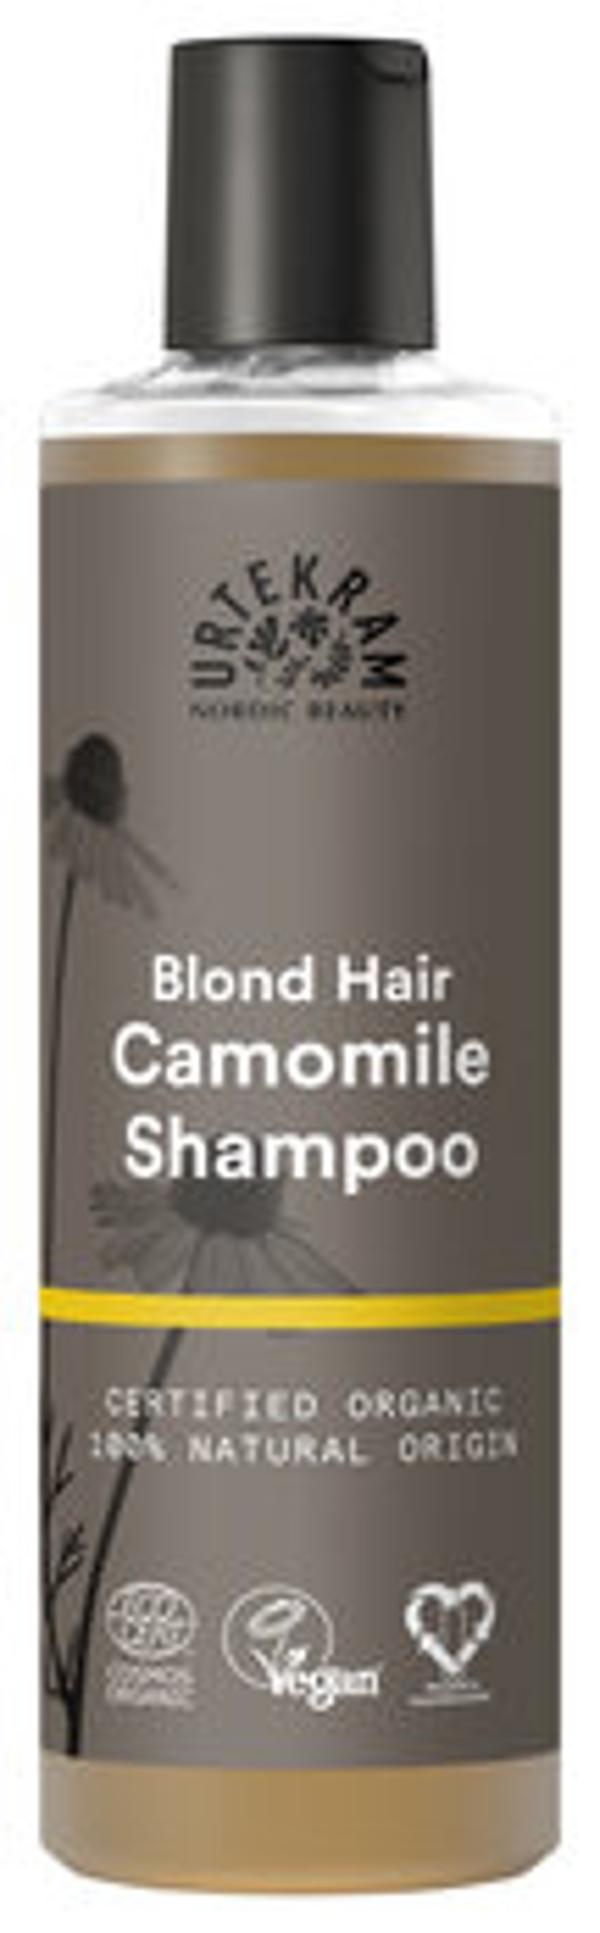 Produktfoto zu Shampoo Camomile für blondes Haar